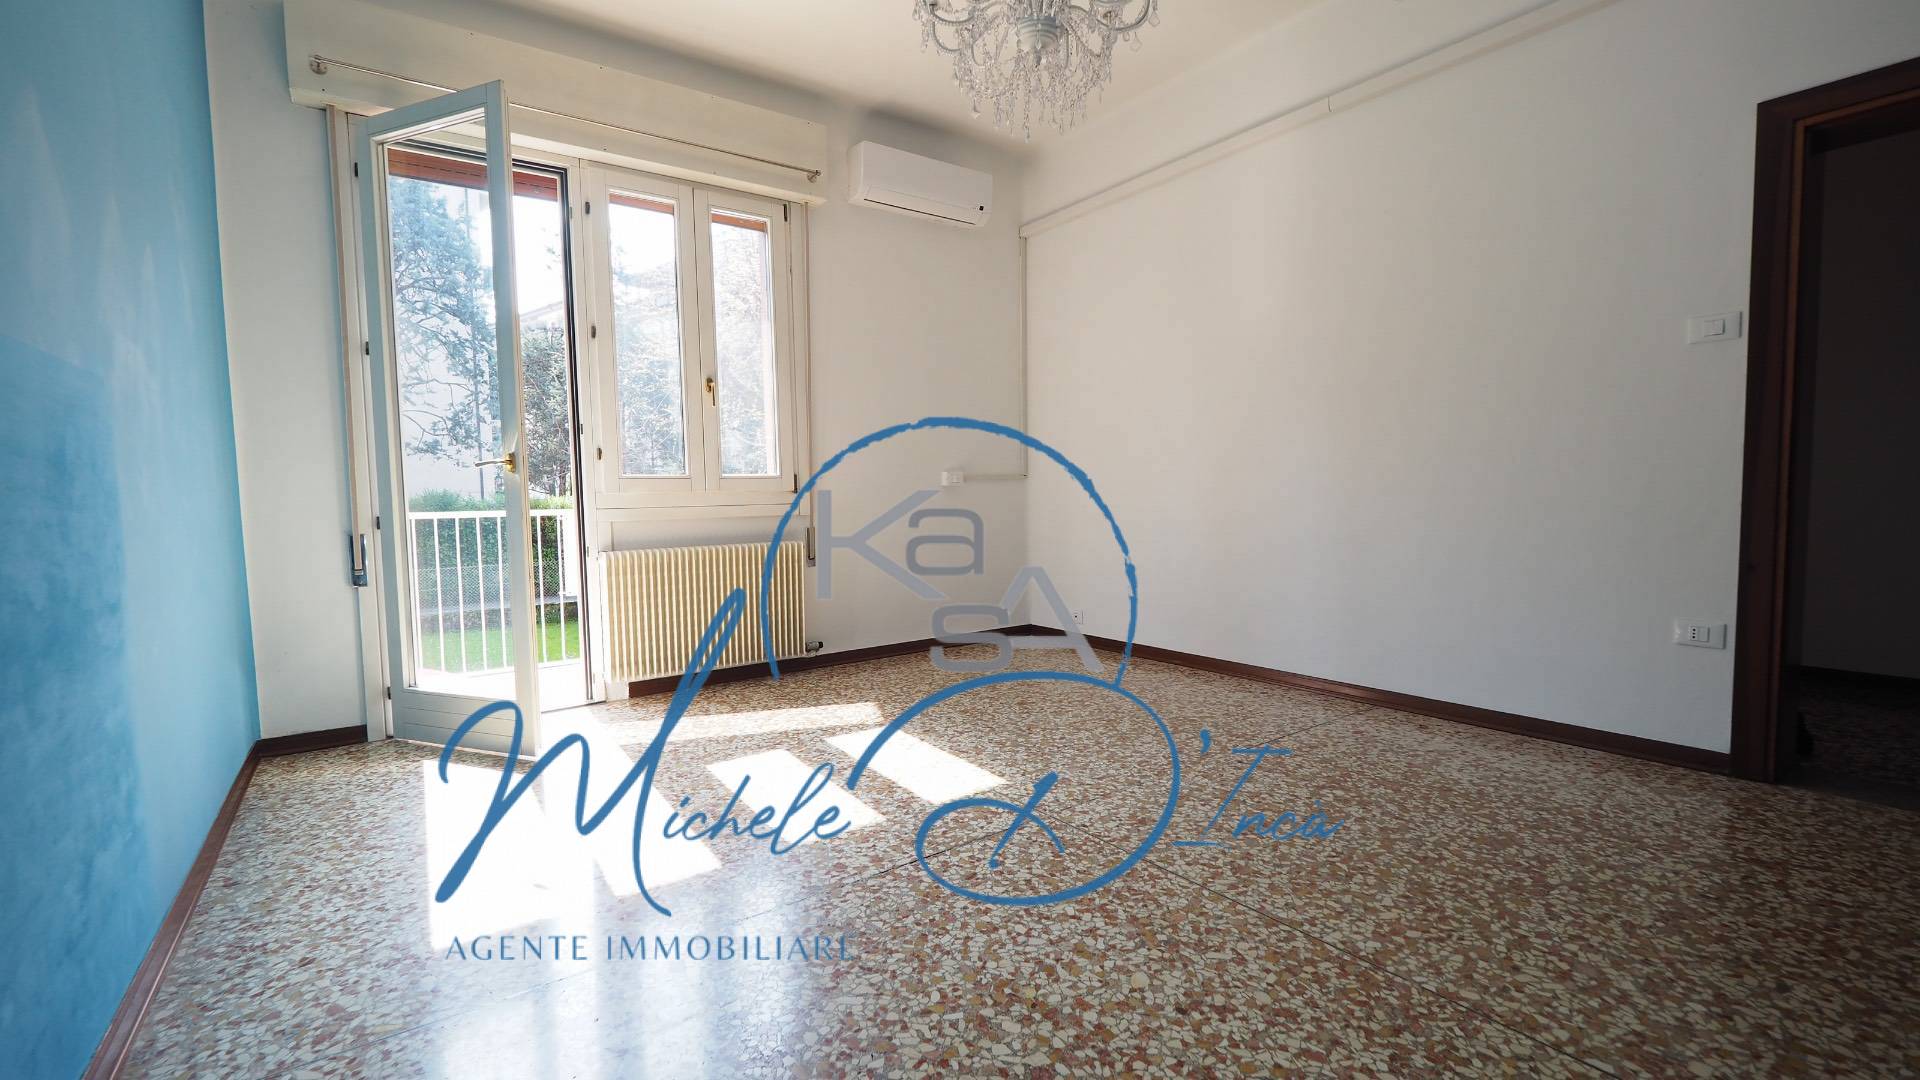 Appartamento in vendita a Treviso, 5 locali, zona Località: FuoriMura, prezzo € 138.000 | PortaleAgenzieImmobiliari.it